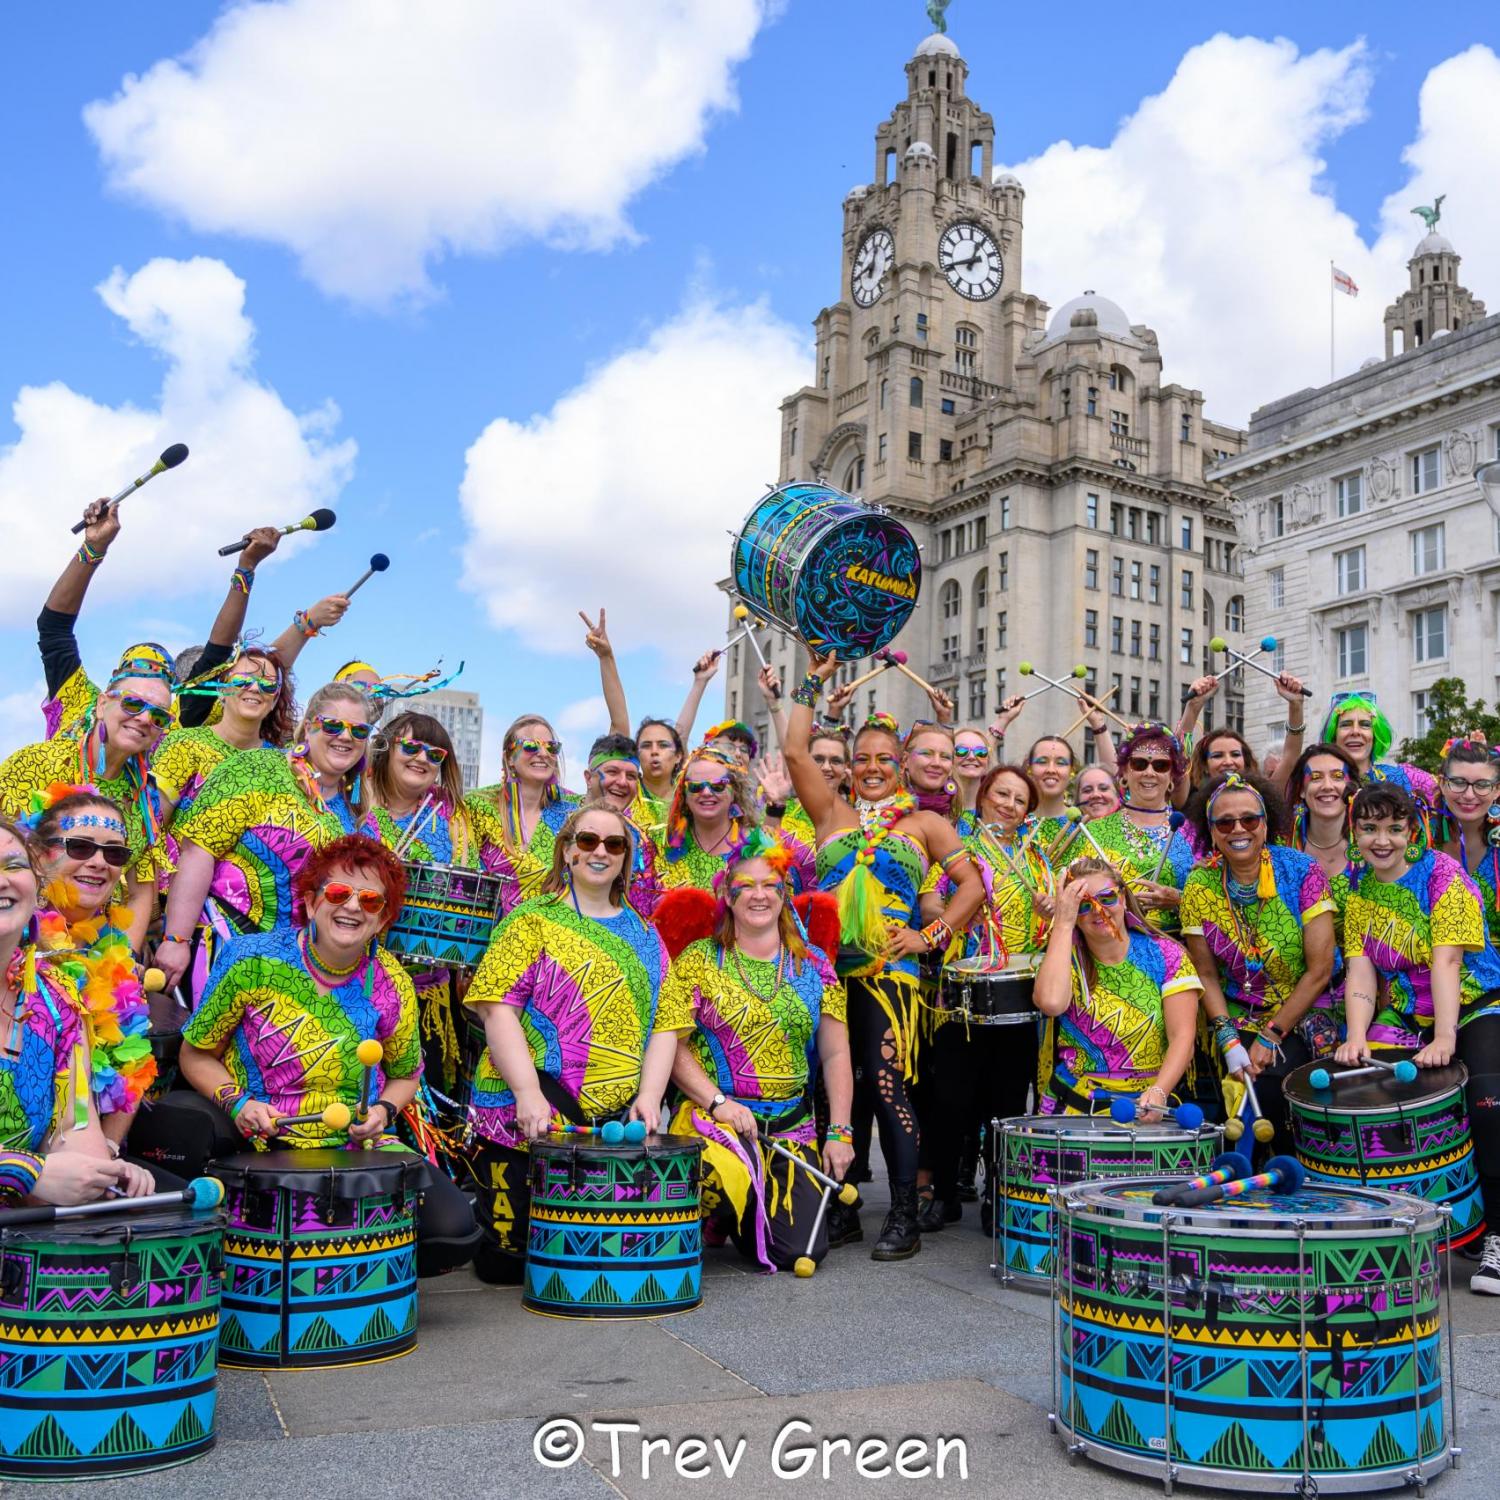 Drumming Group Liverpool - Drumming Group Liverpool